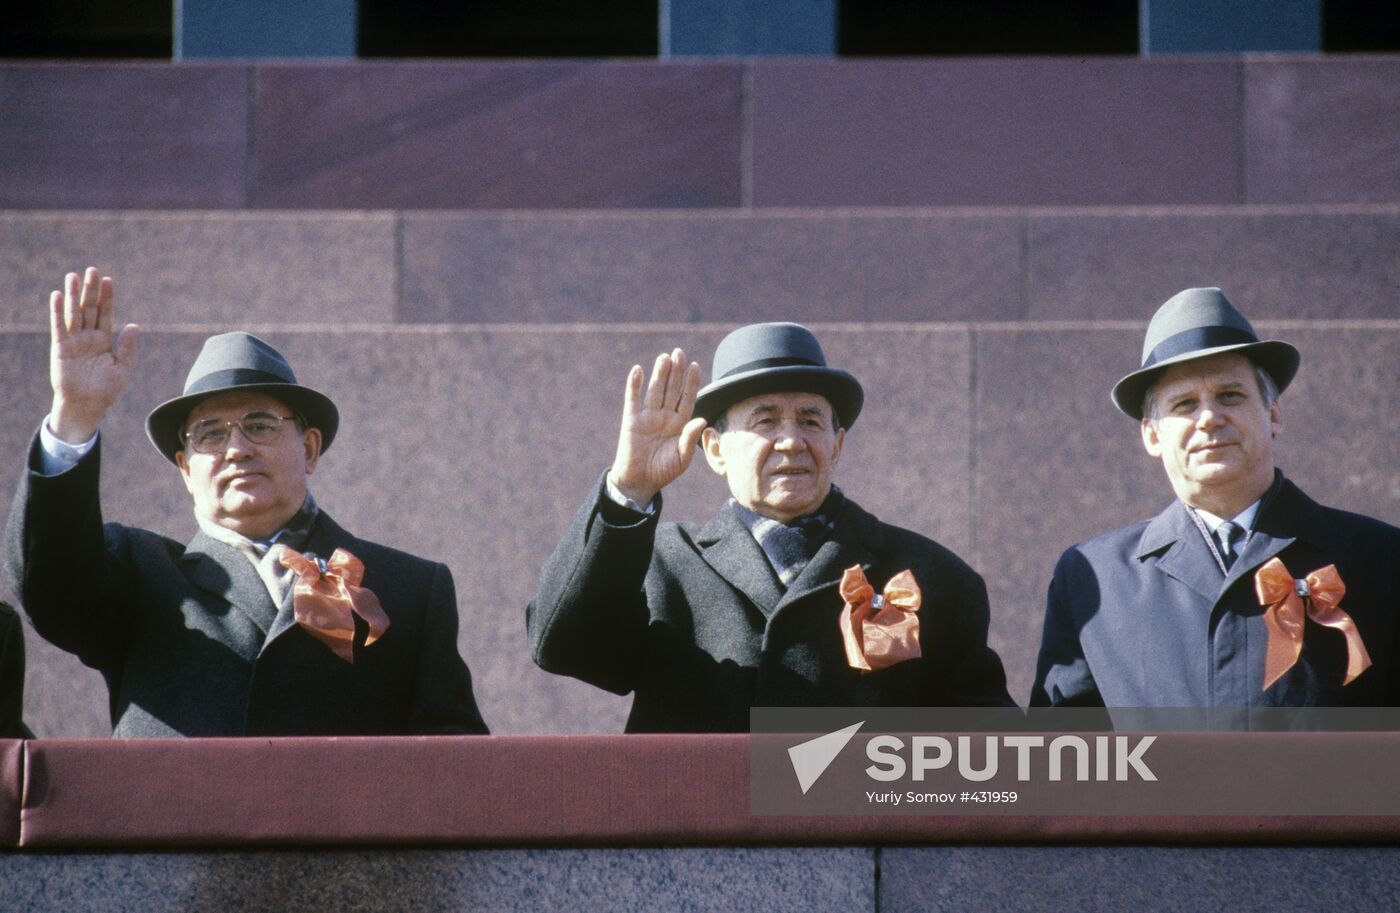 Mikhail Gorbachev, Andrei Gromyko, and Nikolai Ryzhkov